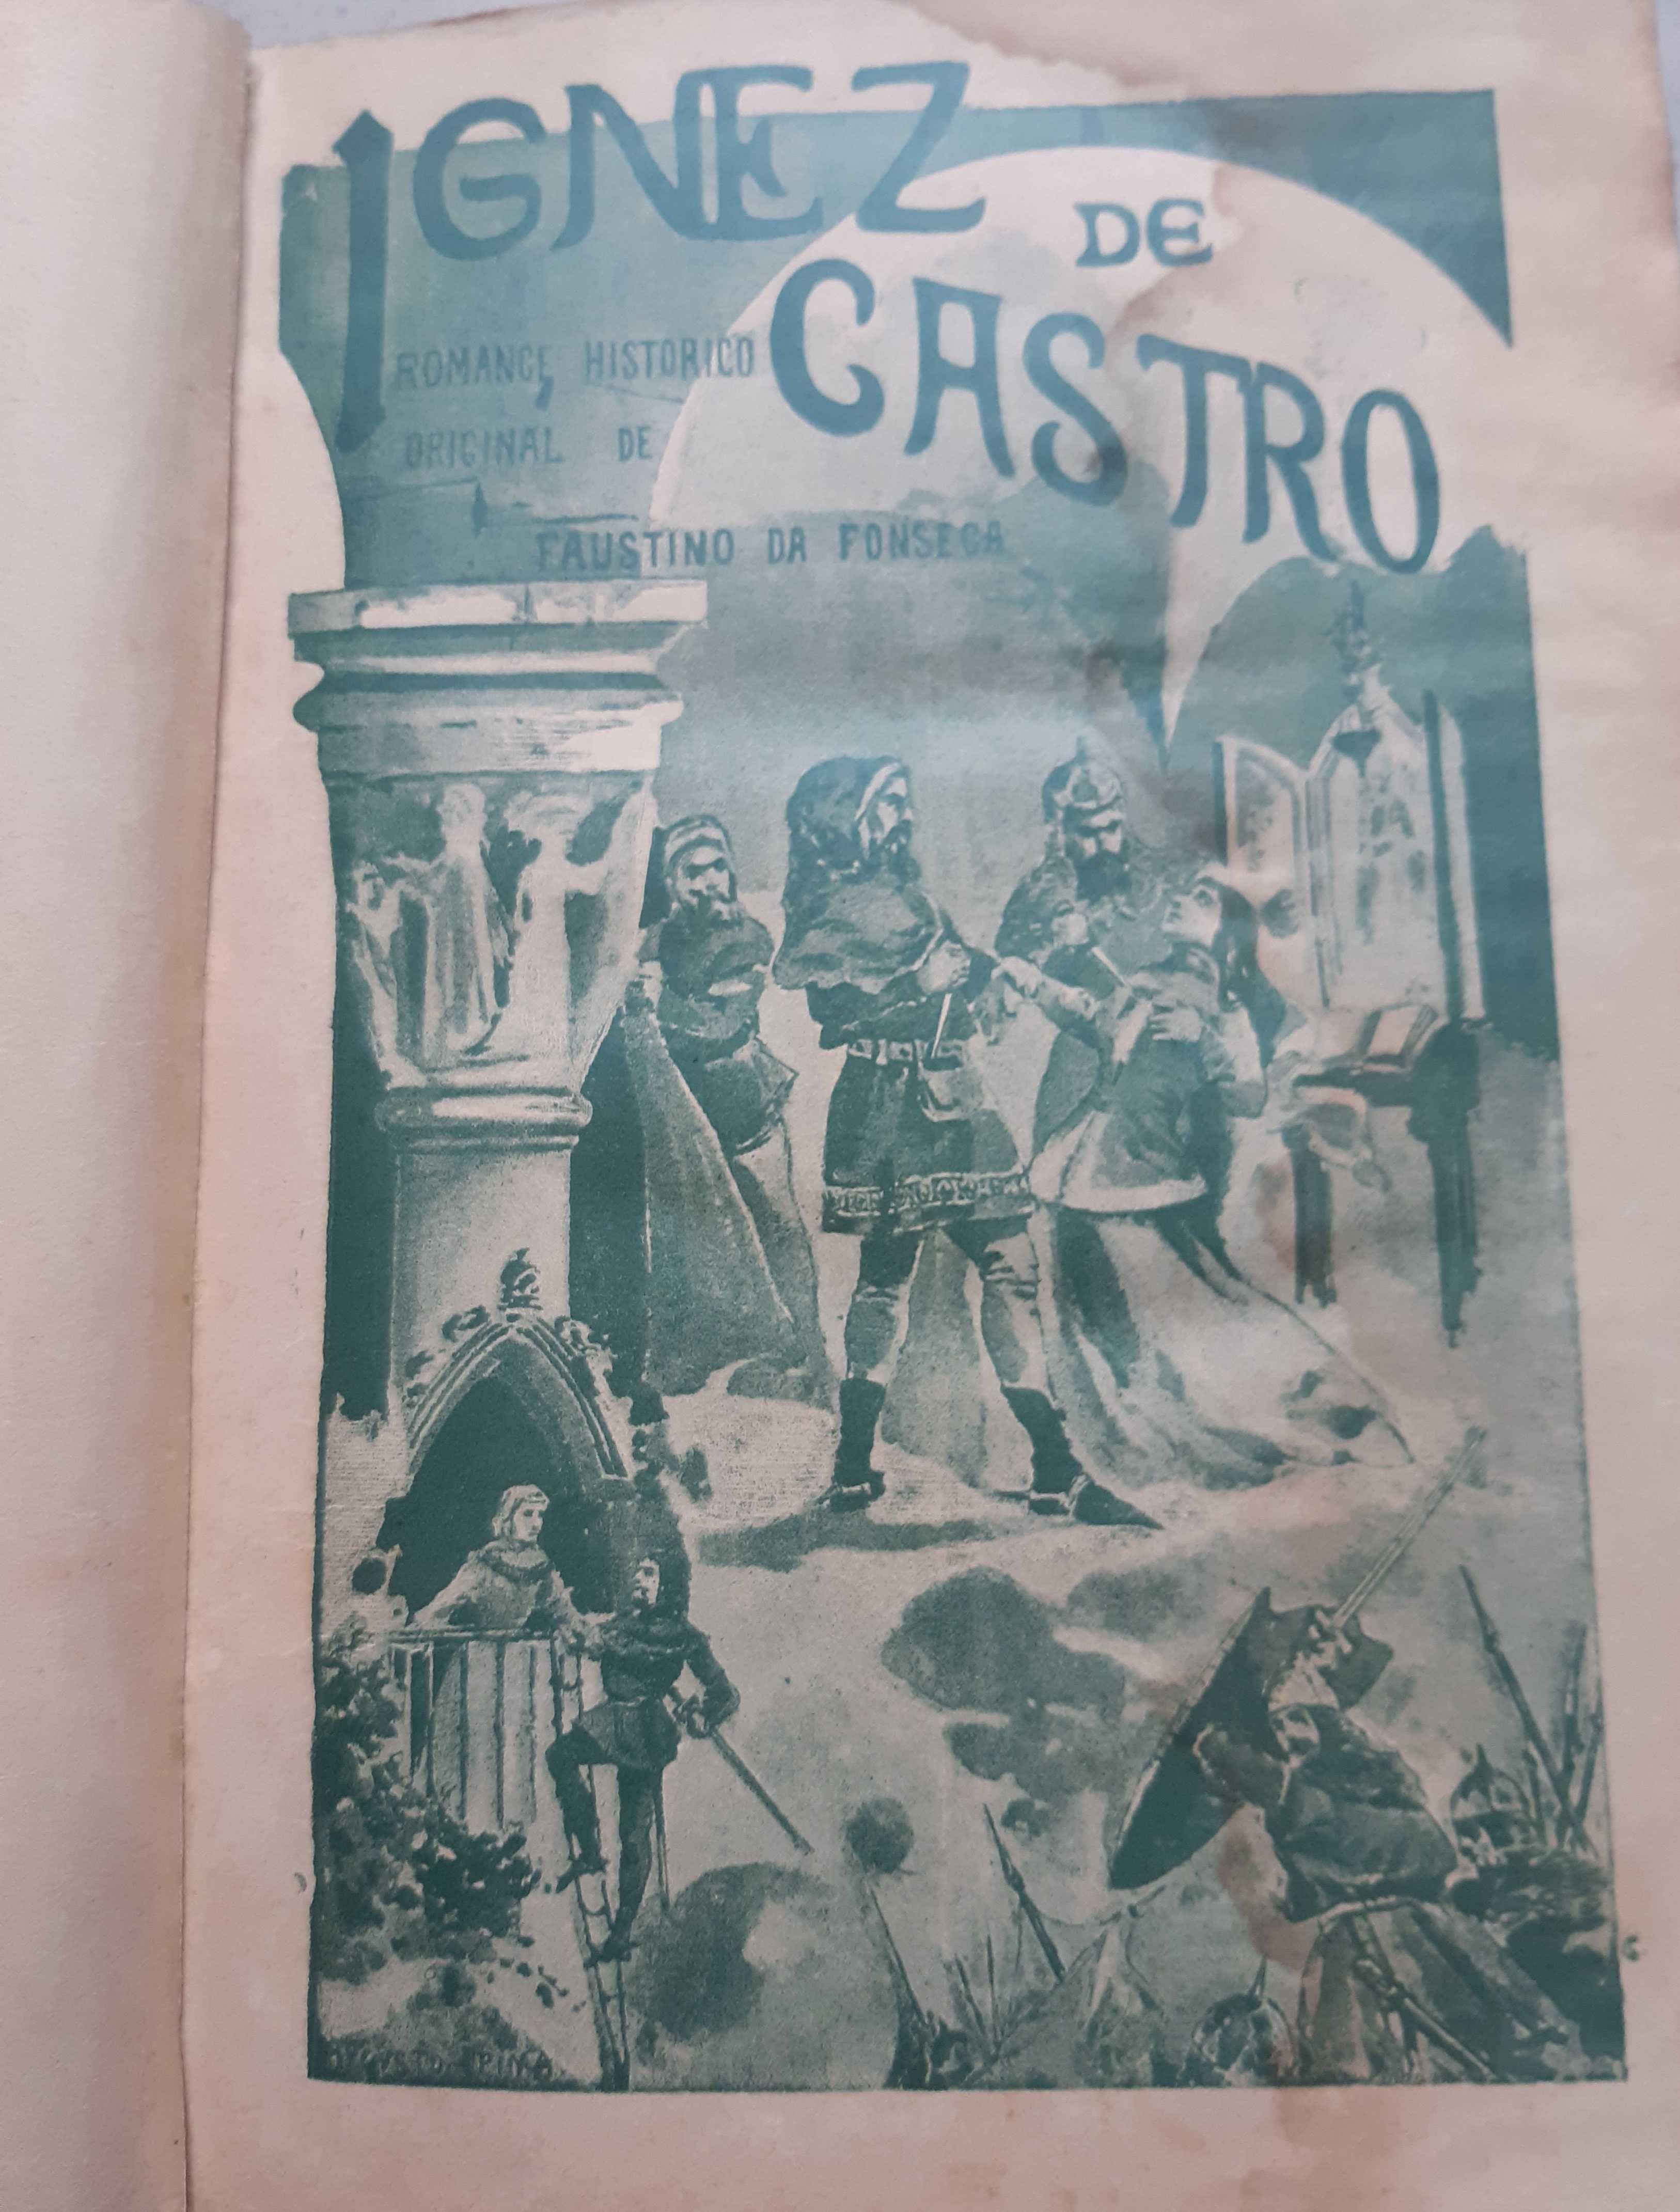 Livro Antigo "Ignez de Castro" - 1900